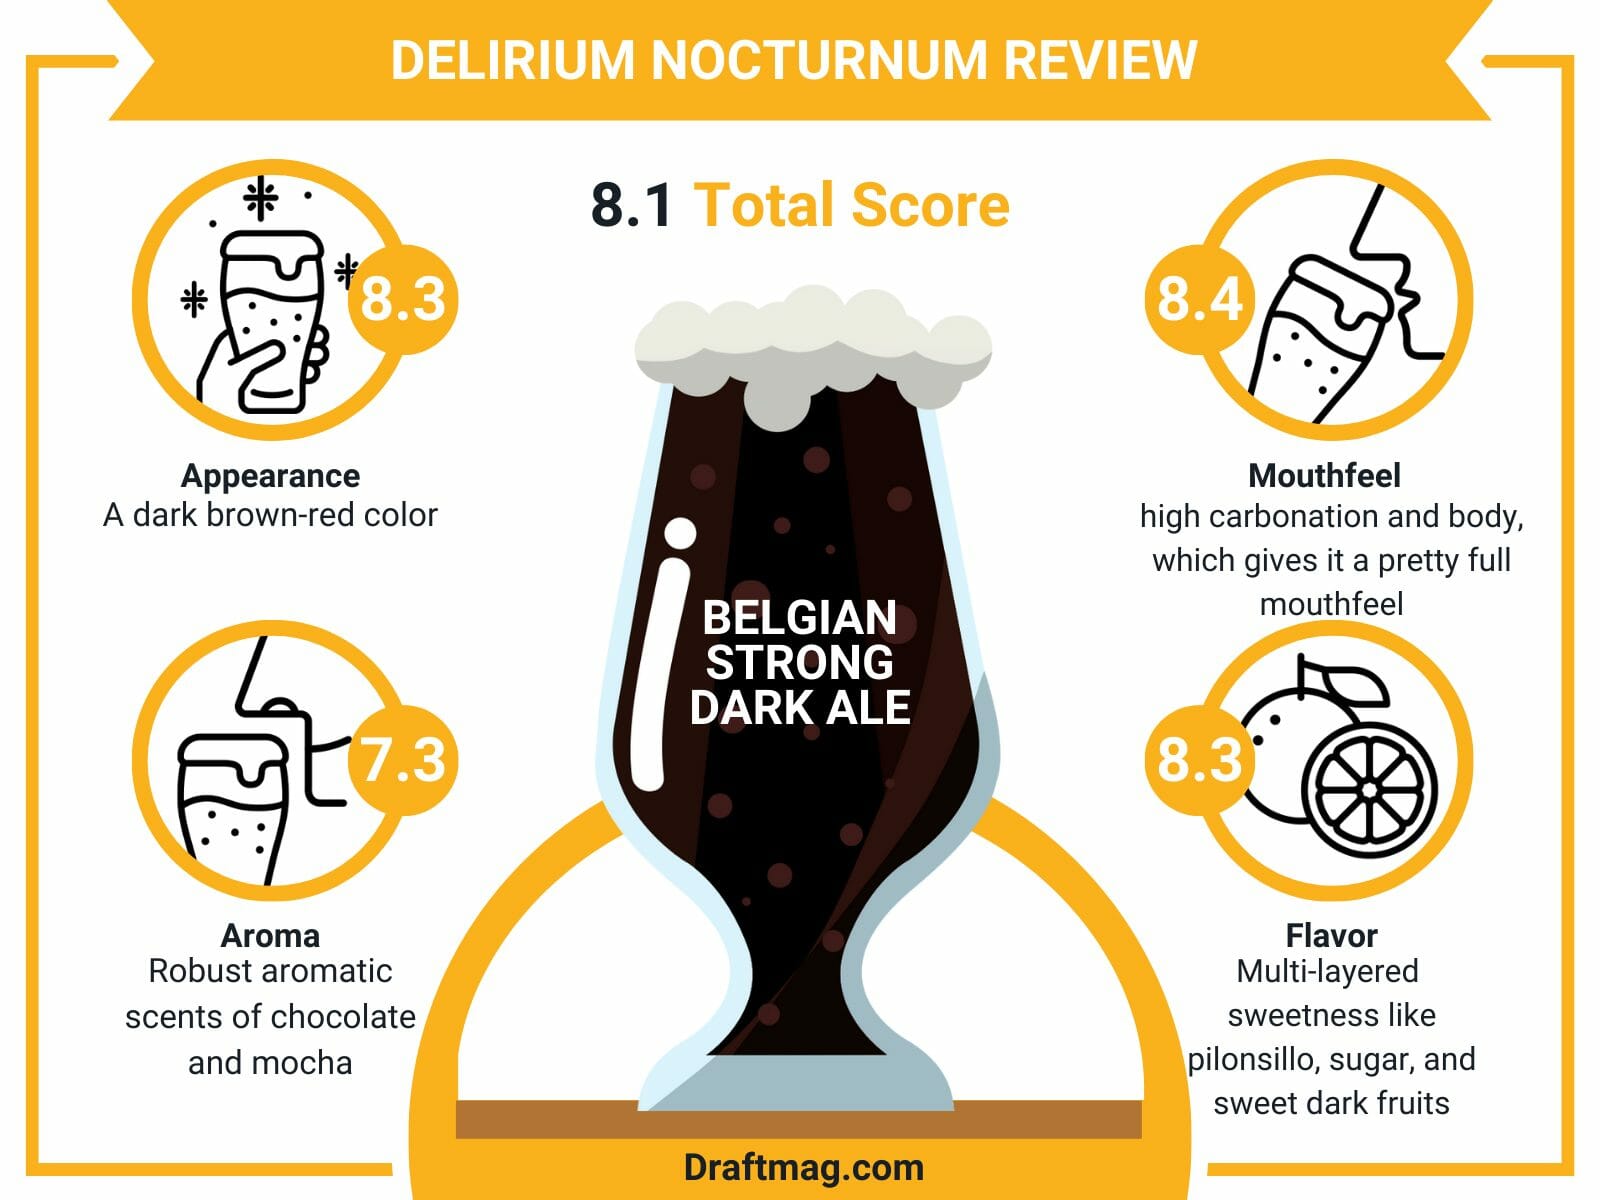 Delirium nocturnum review infographic